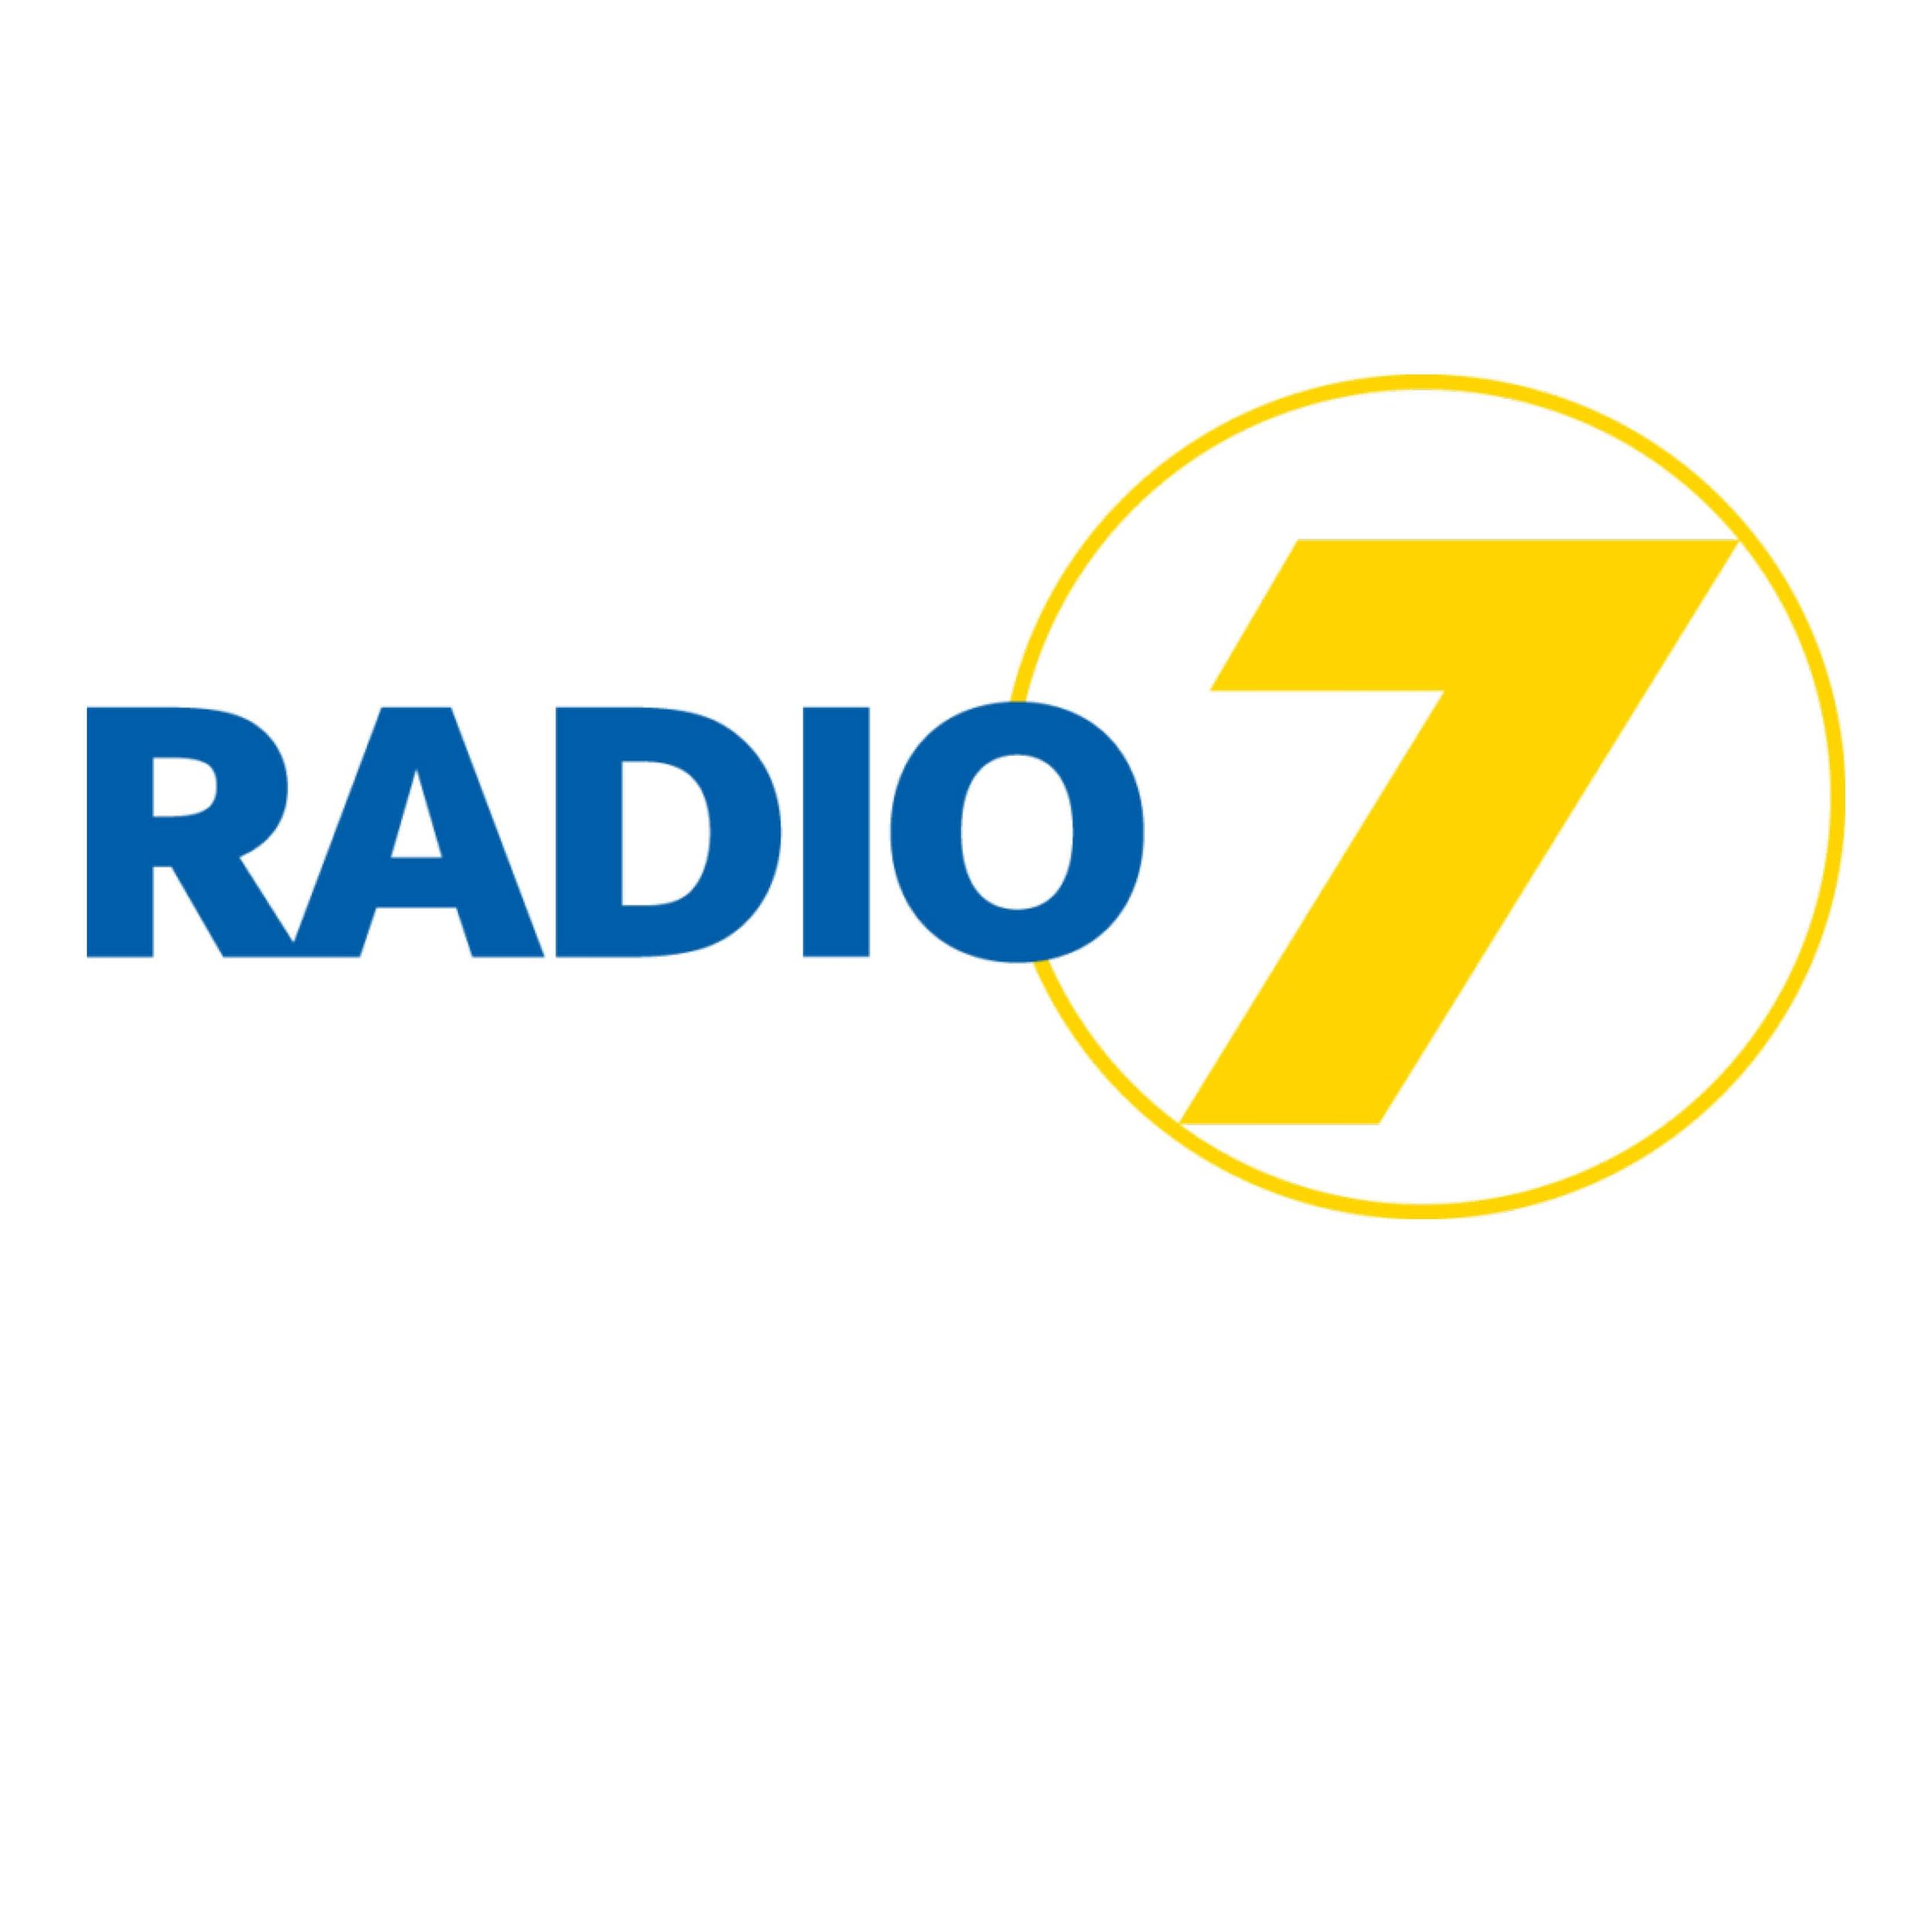 Radio 7 (Kopie) (Kopie) (Kopie)